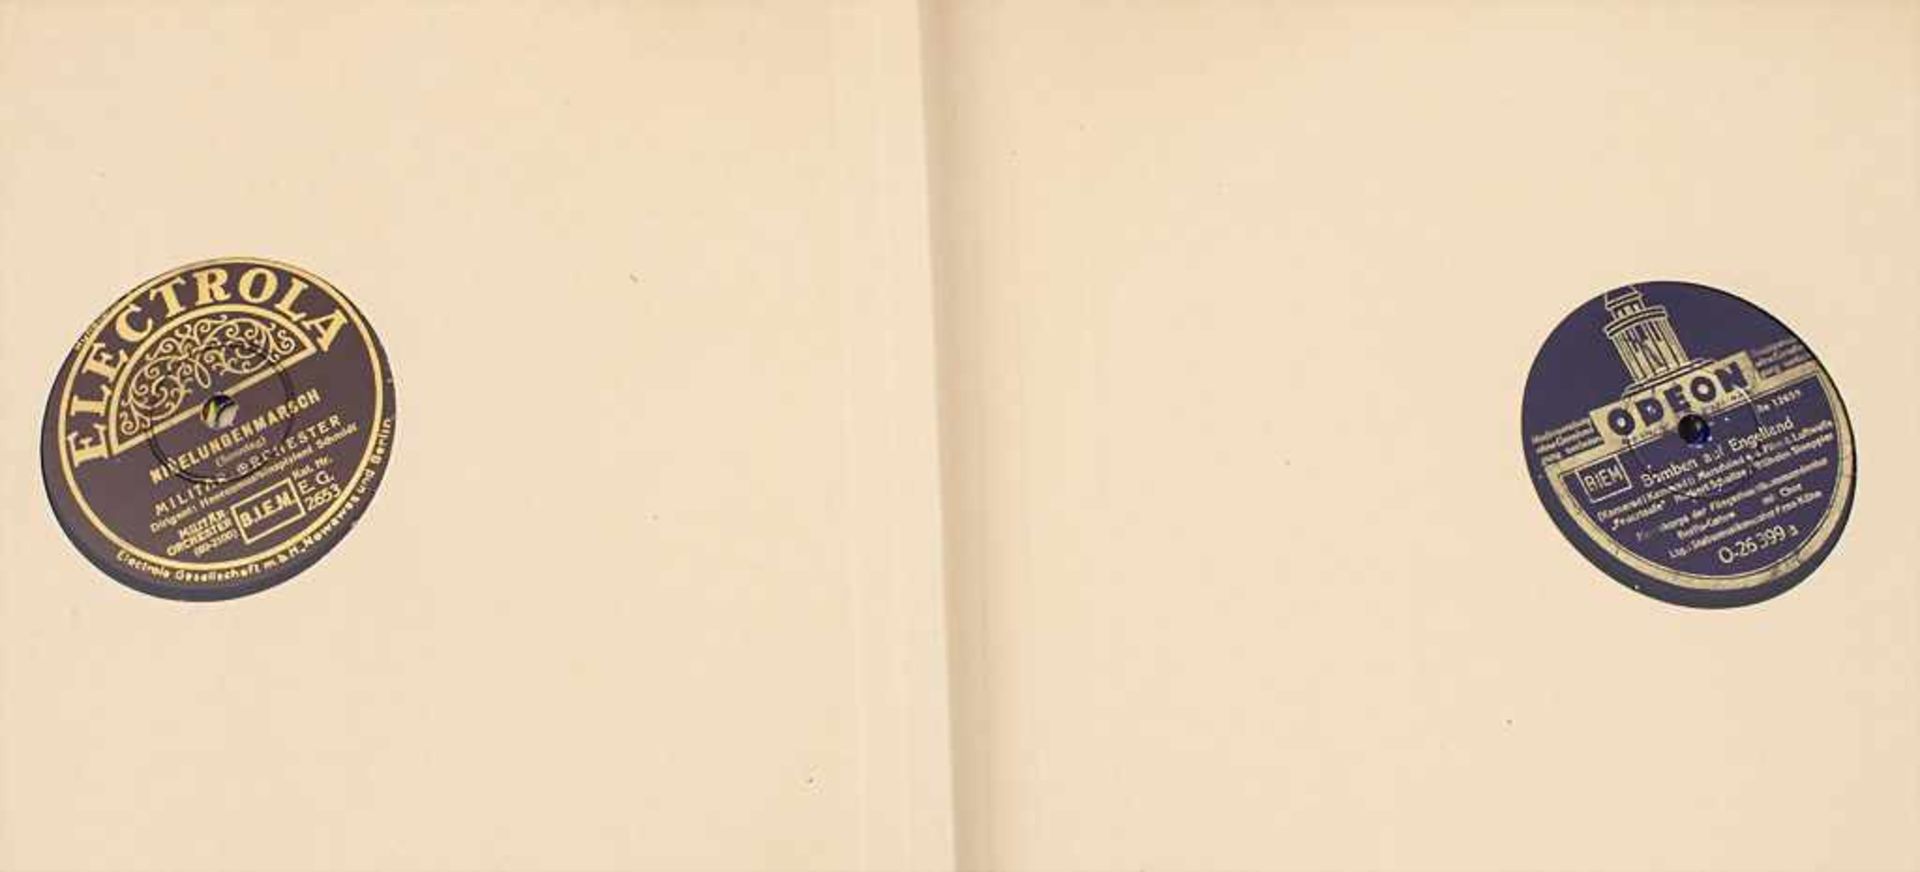 4 Sammelalben Schellackplatten / A collection of schellack records Bestehend aus 45 Platten der - Bild 3 aus 5